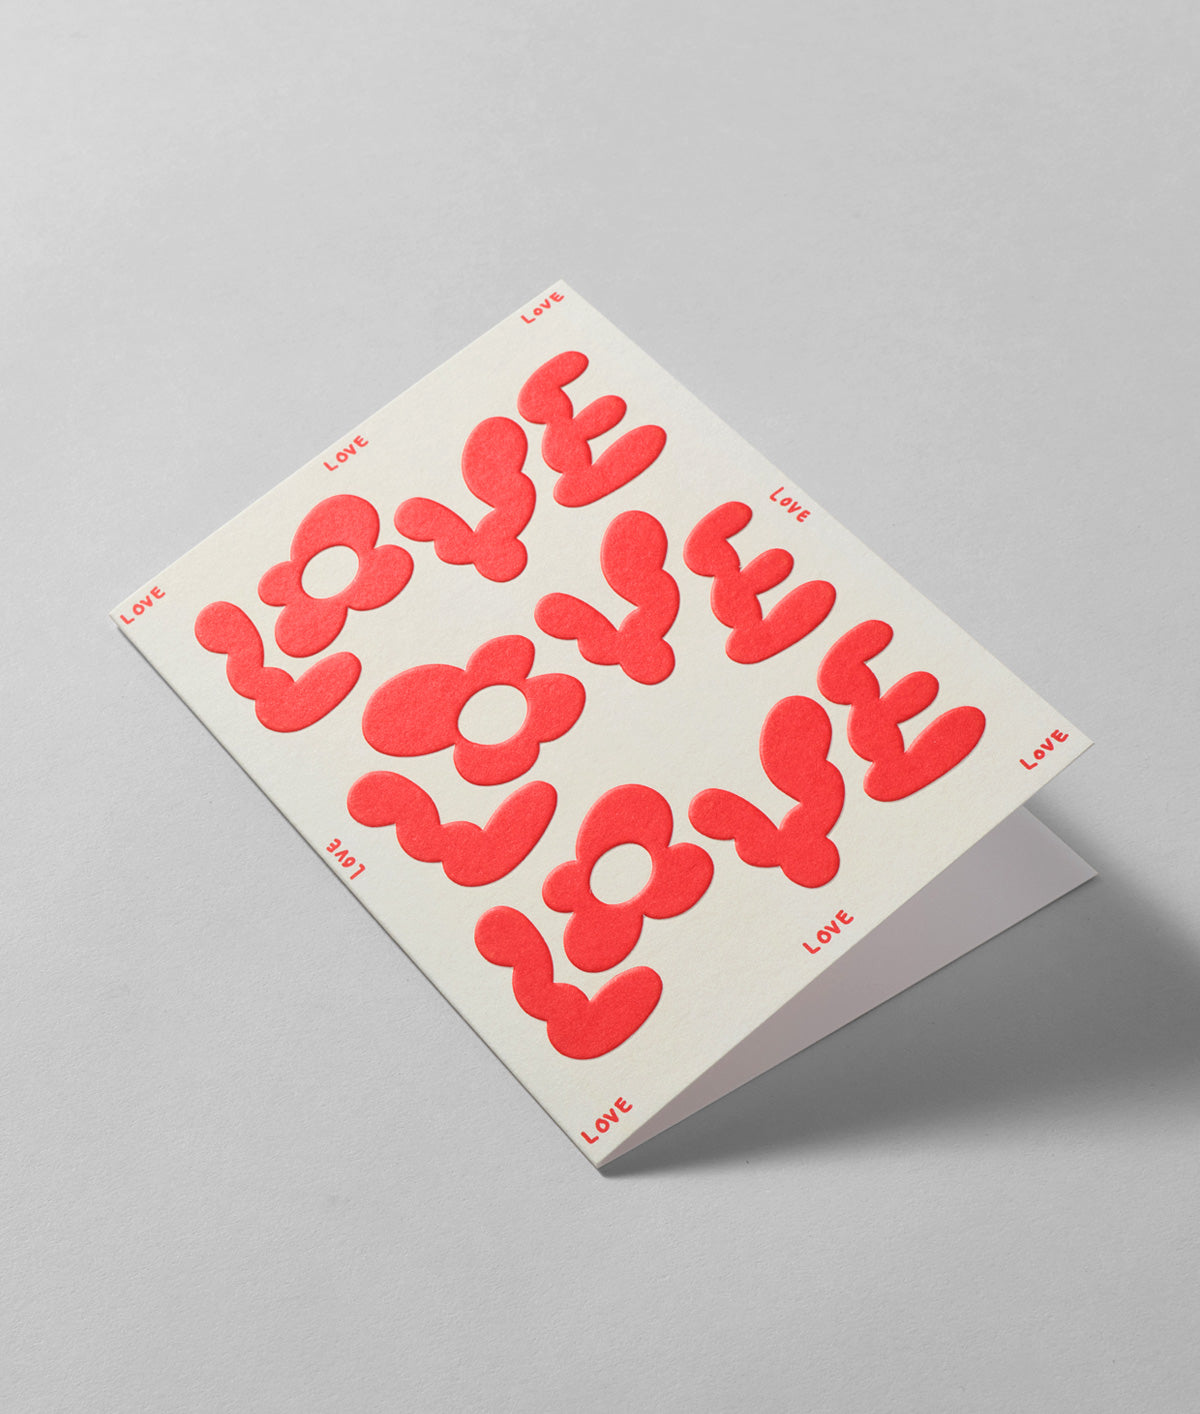 Love Love Love Embossed Greetings Card